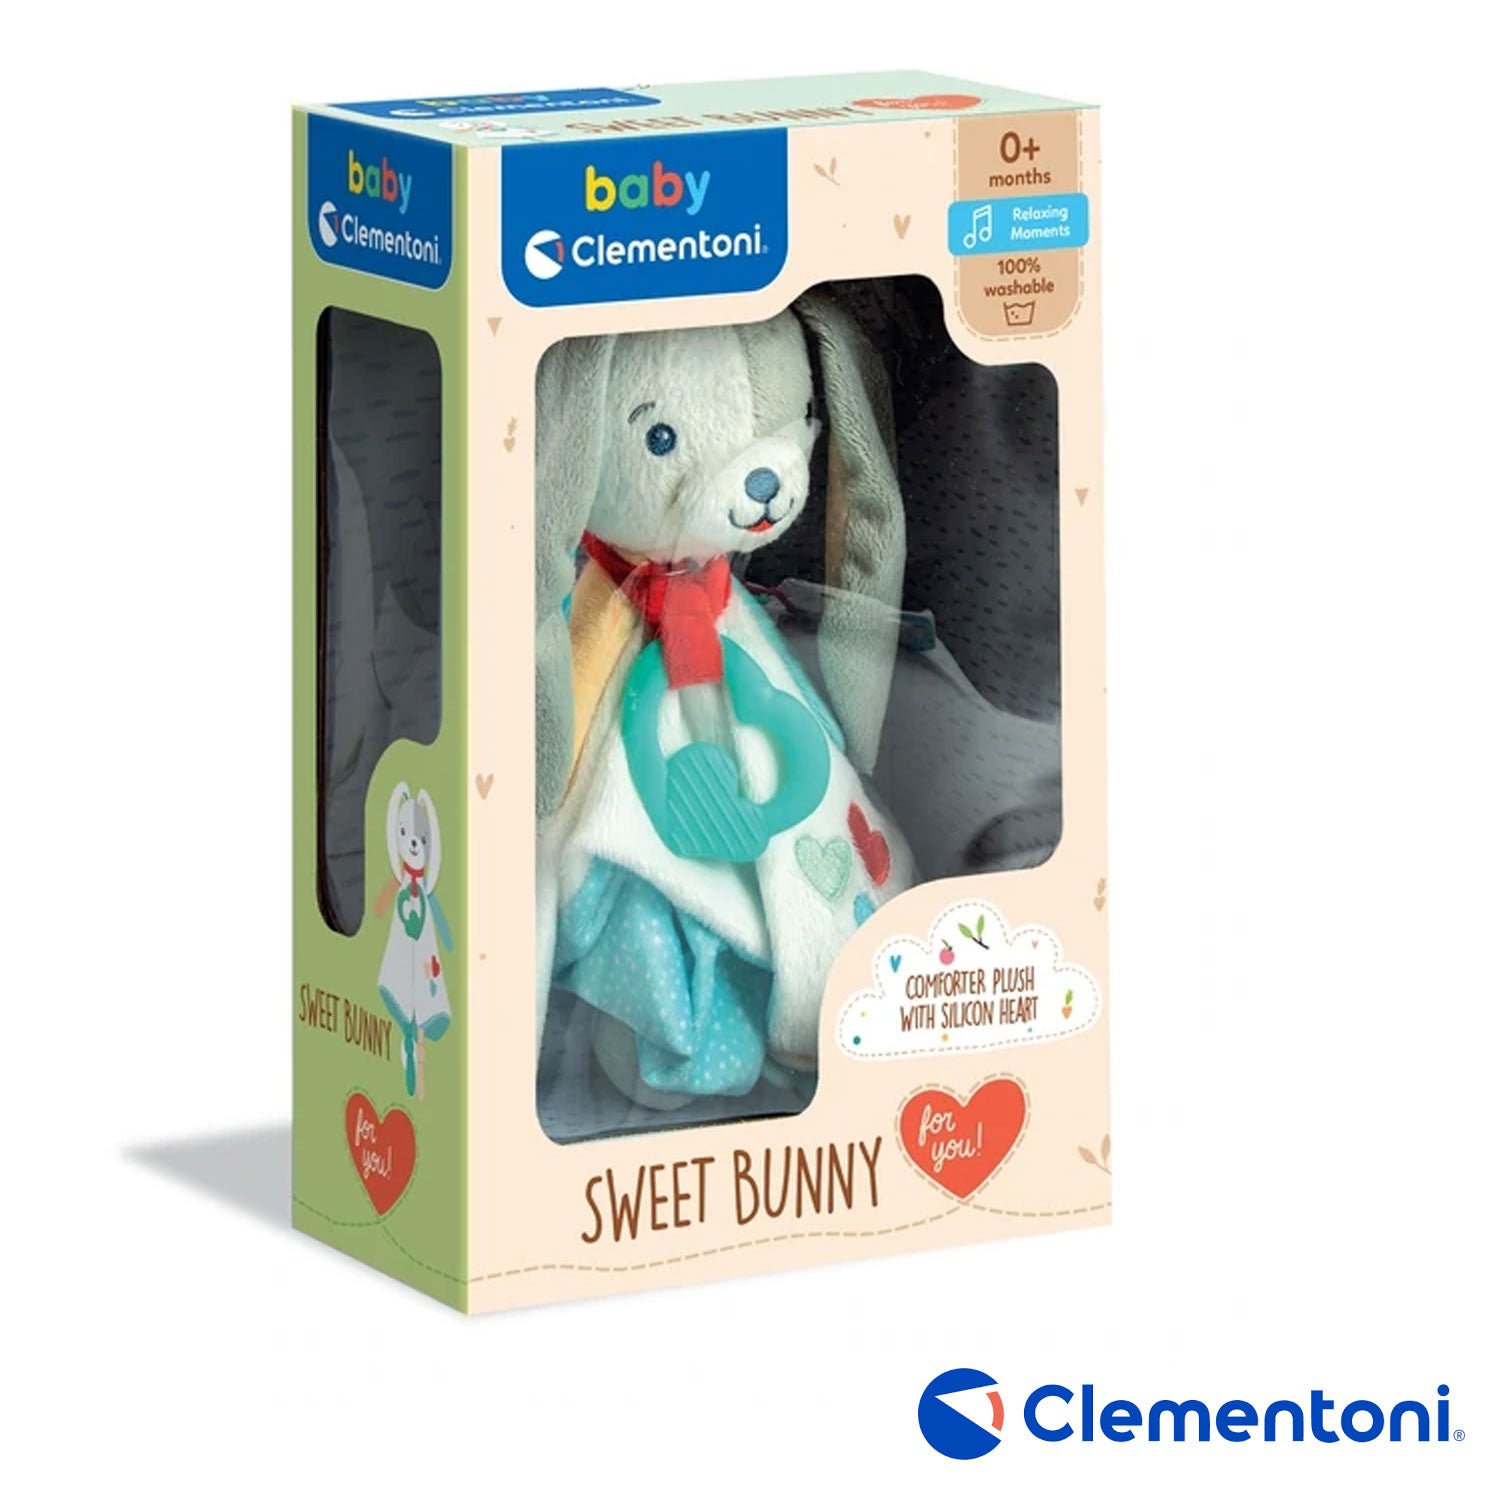 Clementoni – Sweet Bunny Comforter Plush Peluche DouDou